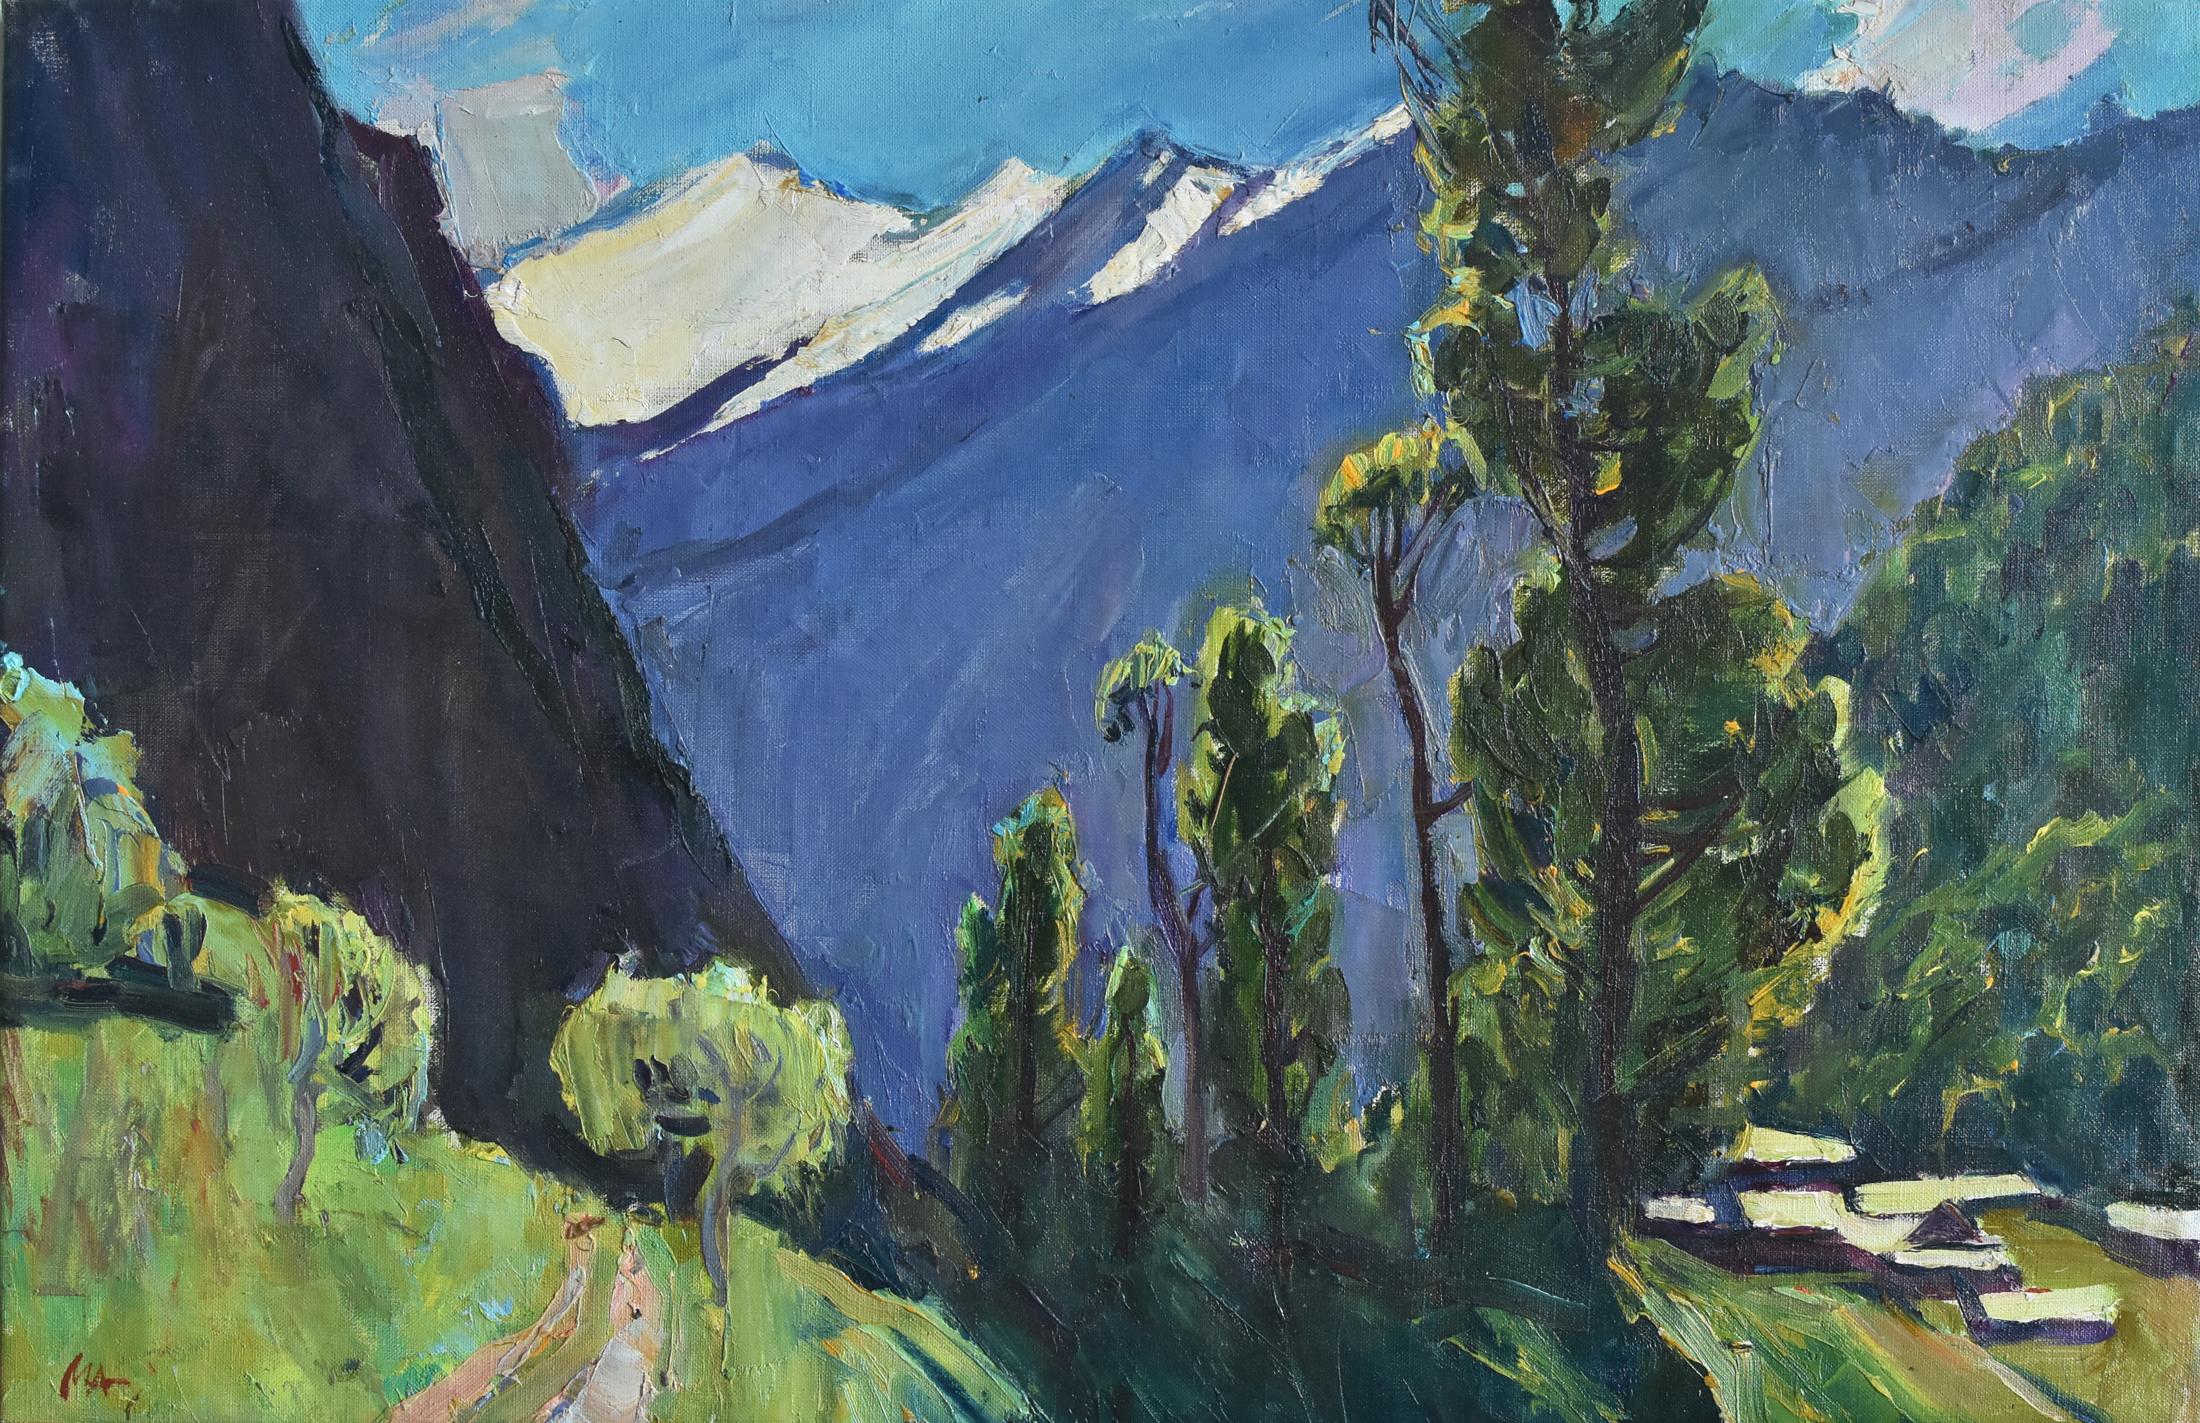 Himalayas. Original modern art painting